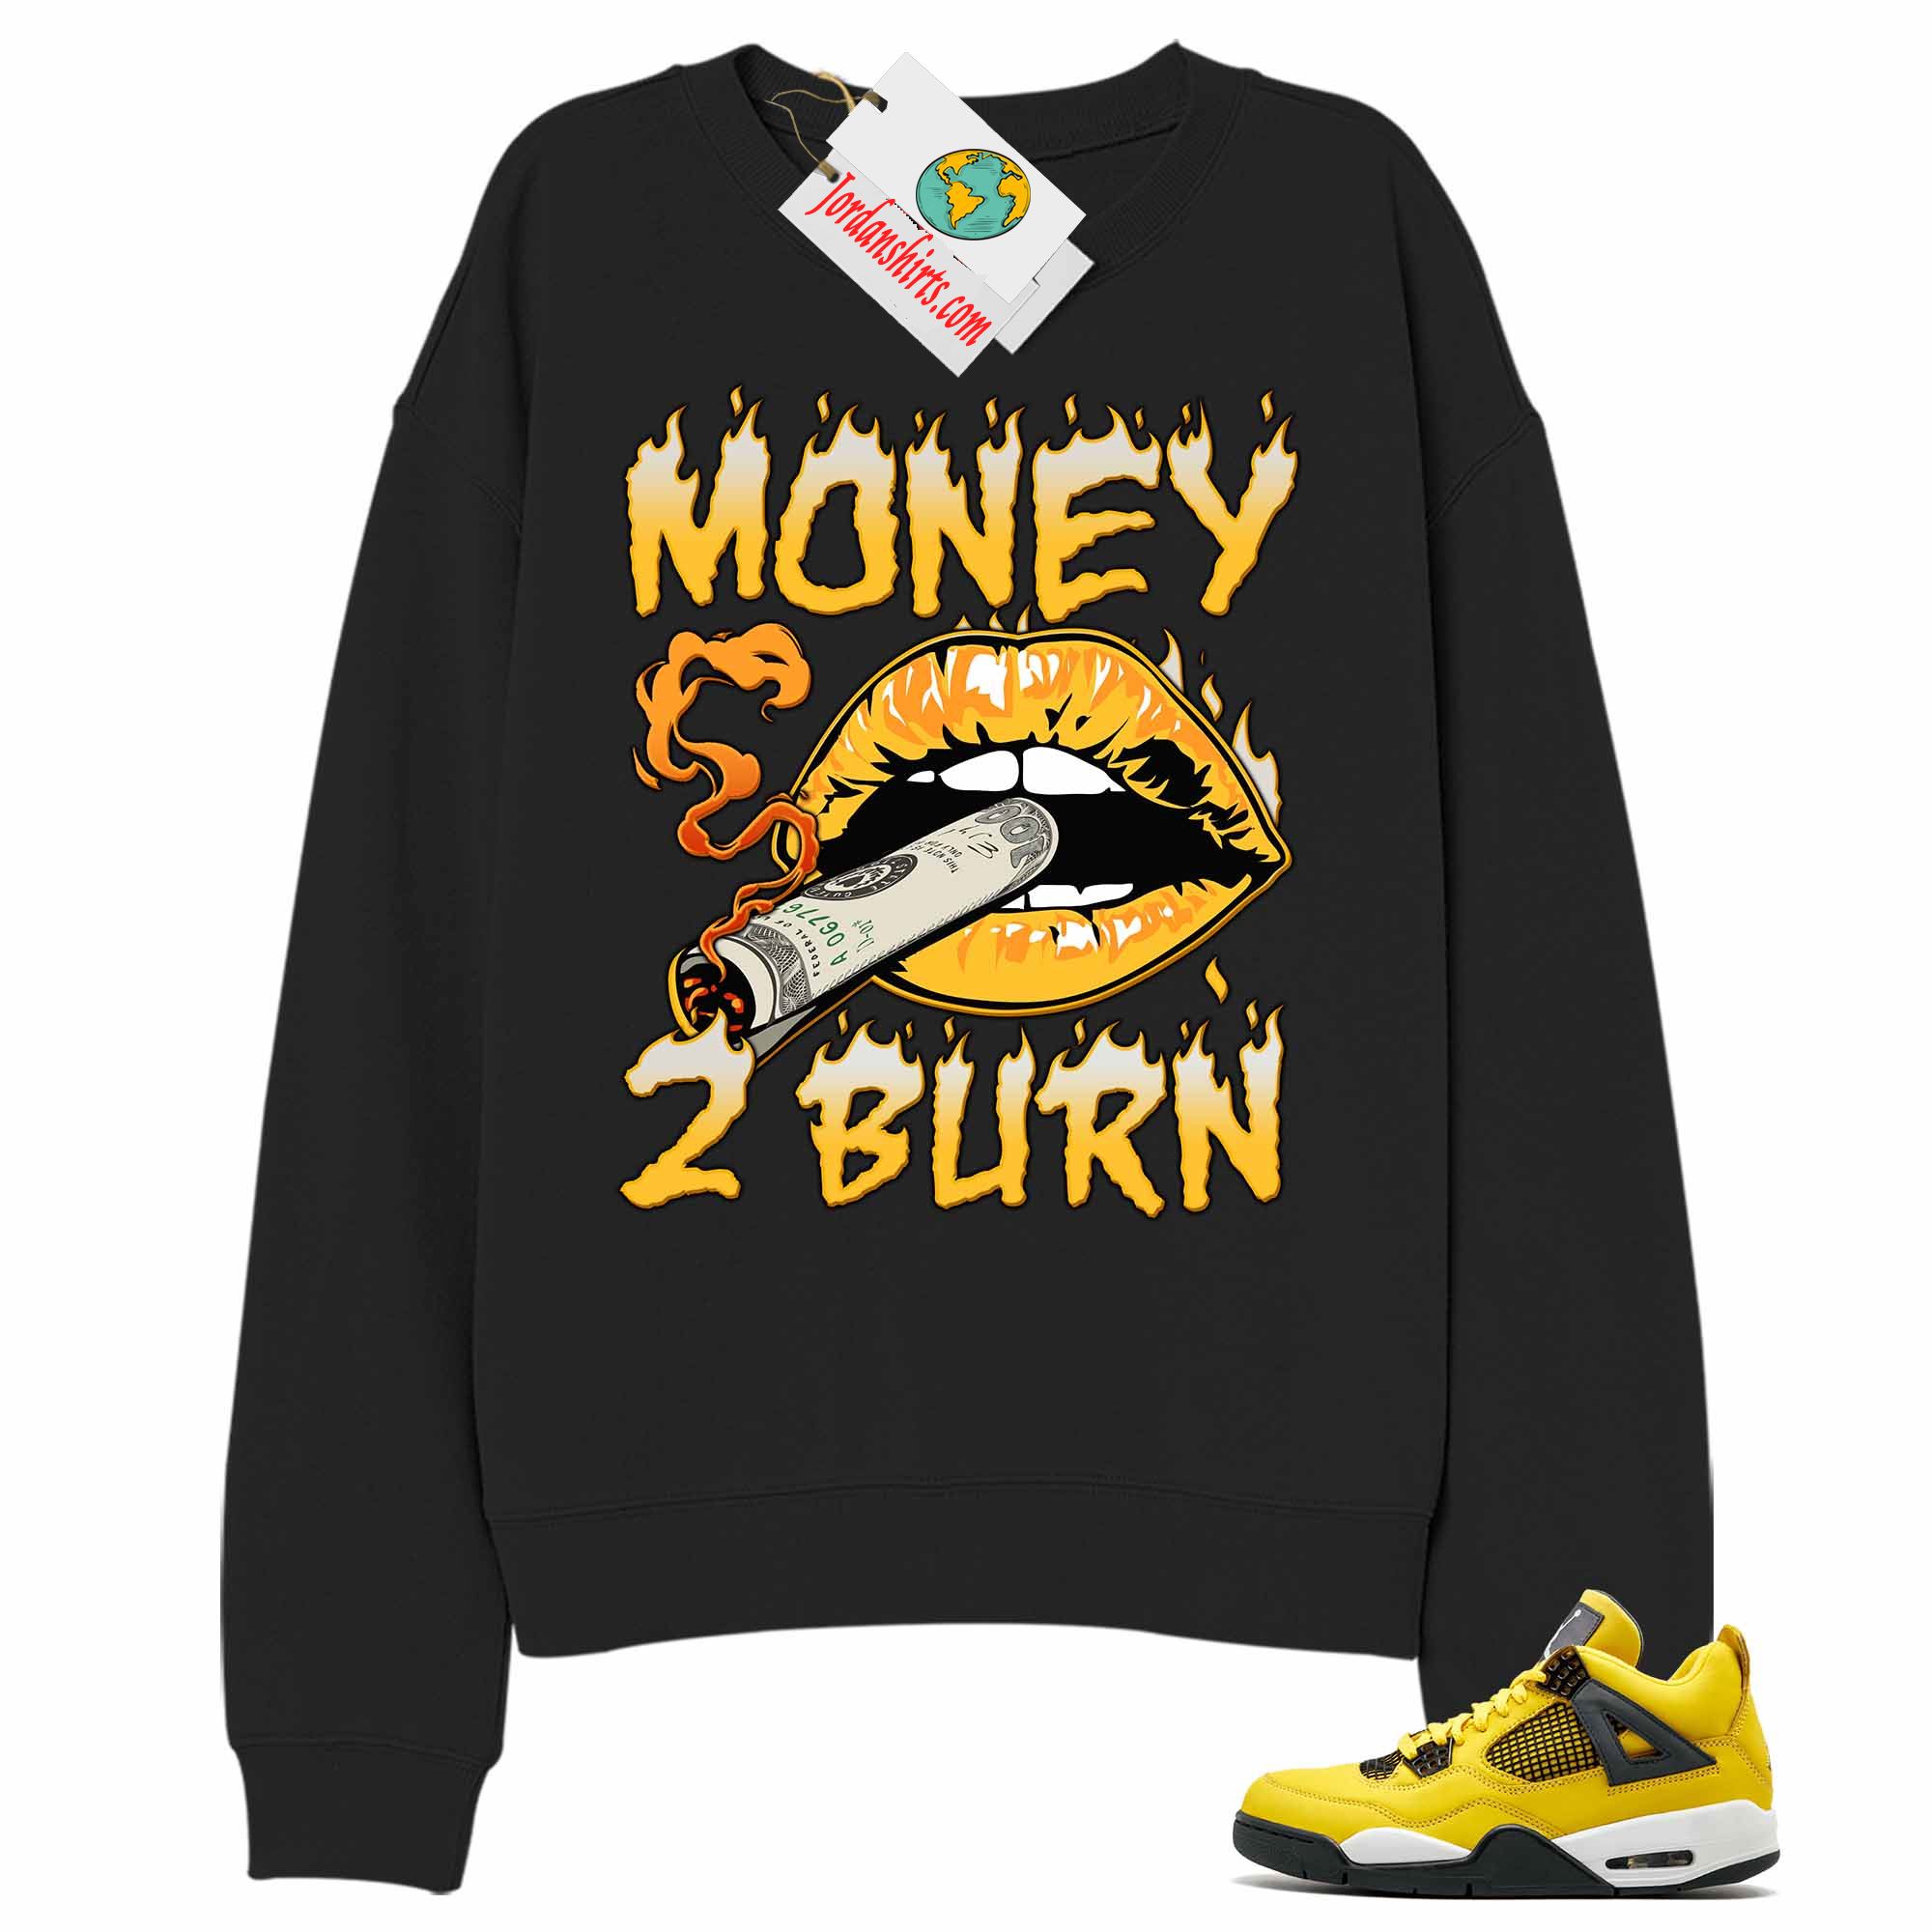 Jordan 4 Sweatshirt, Money To Burn Black Sweatshirt Air Jordan 4 Tour Yellow Lightning 4s Full Size Up To 5xl